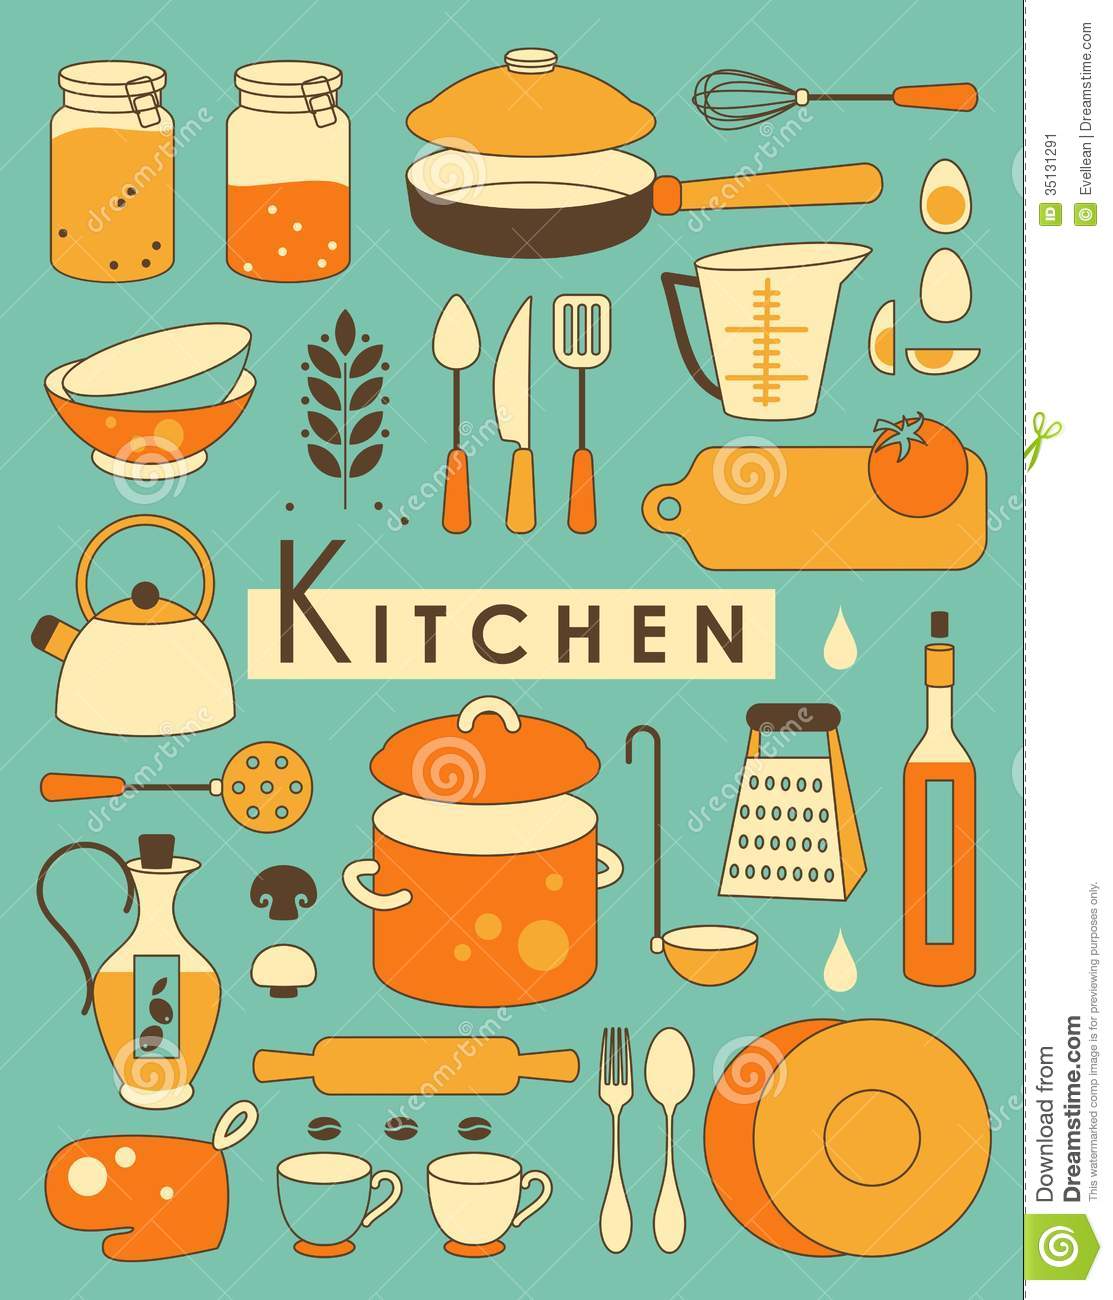 Kitchen Set Stock Image   Image  35131291